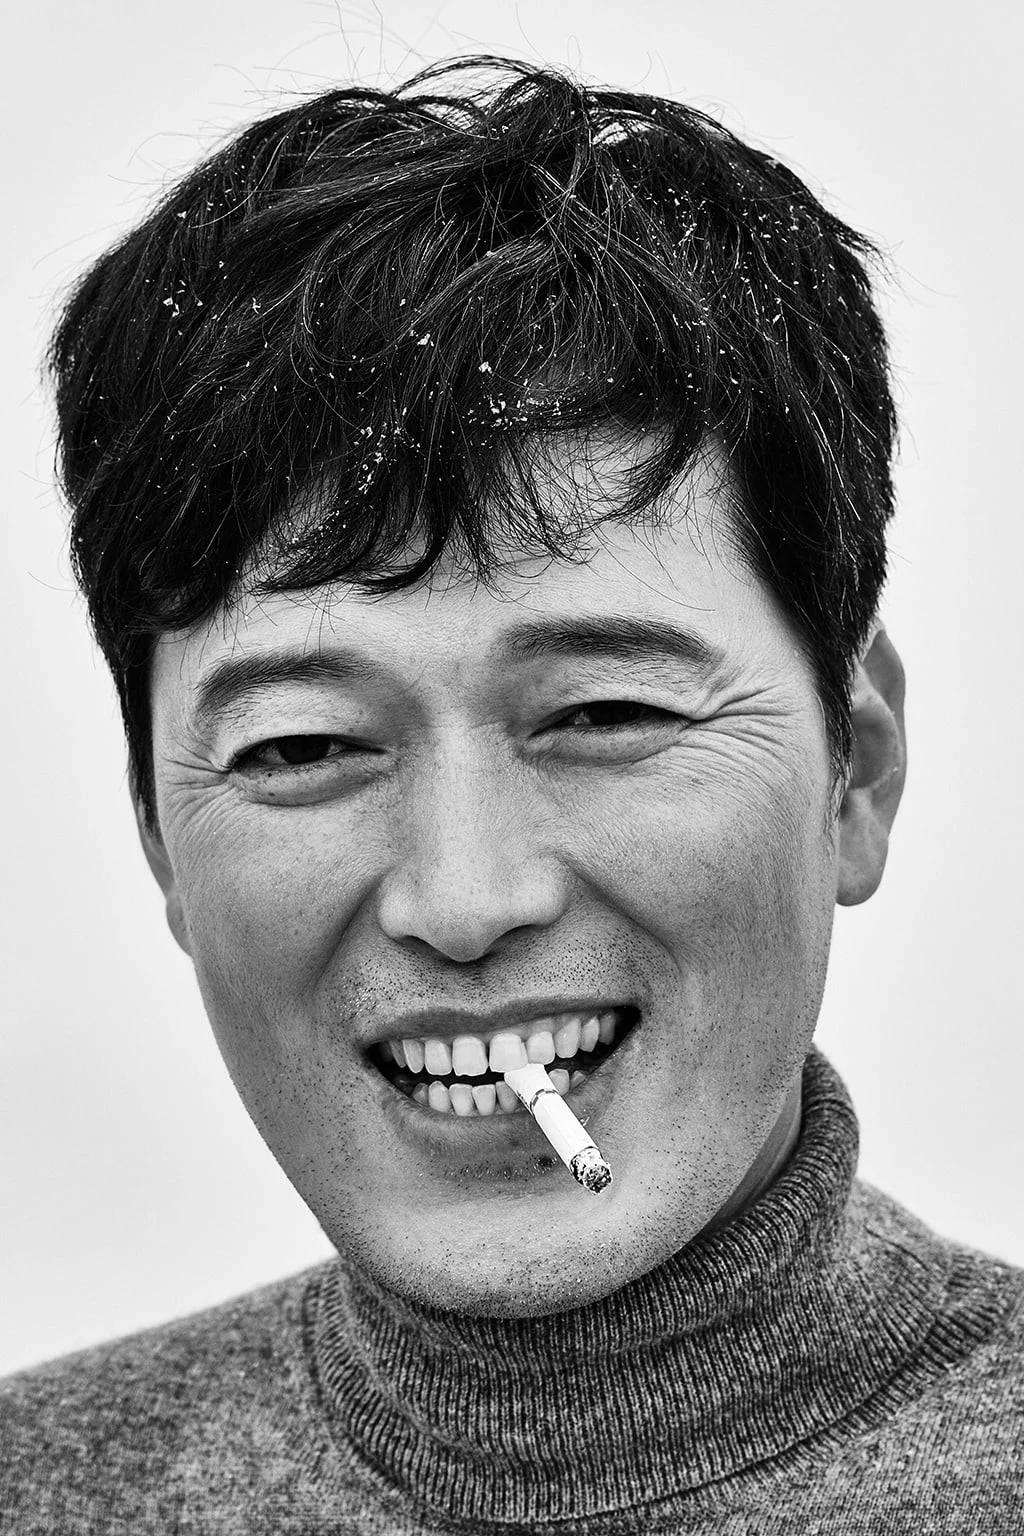  Jung Jae-young